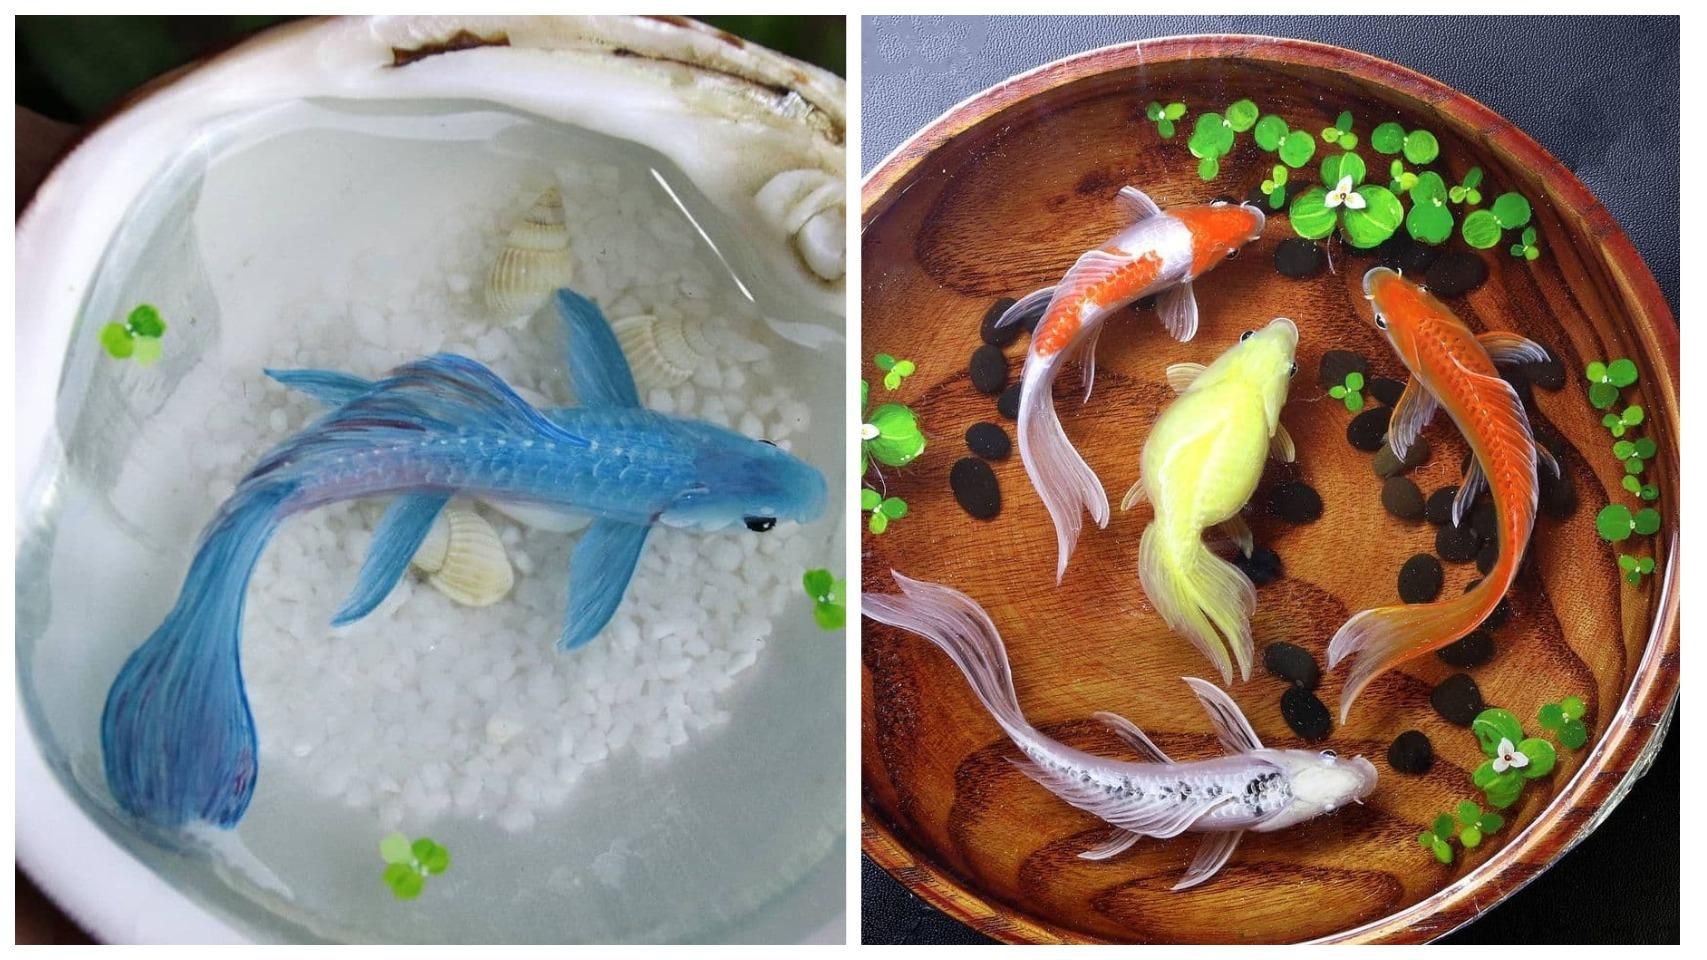 От-от оживуть: японець малює тривимірних золотих рибок, які вражають реалізмом - Life